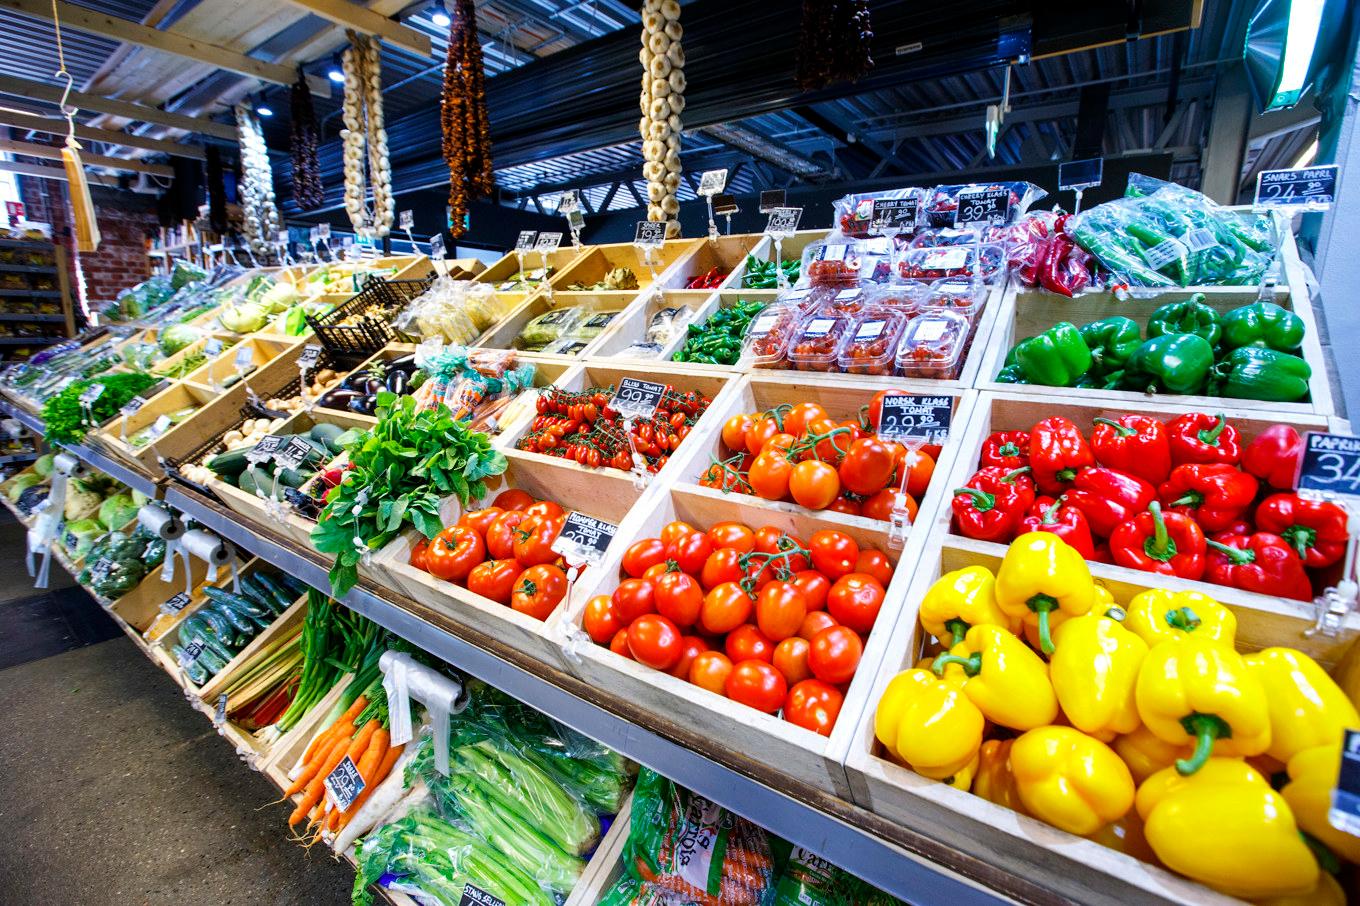 Sänkt moms på nyttiga livsmedel kan bidra till bättre folkhälsa och lägre vårdkostnader, enligt ny rapport. Foto: Gorm Kallestad/NTB/TT